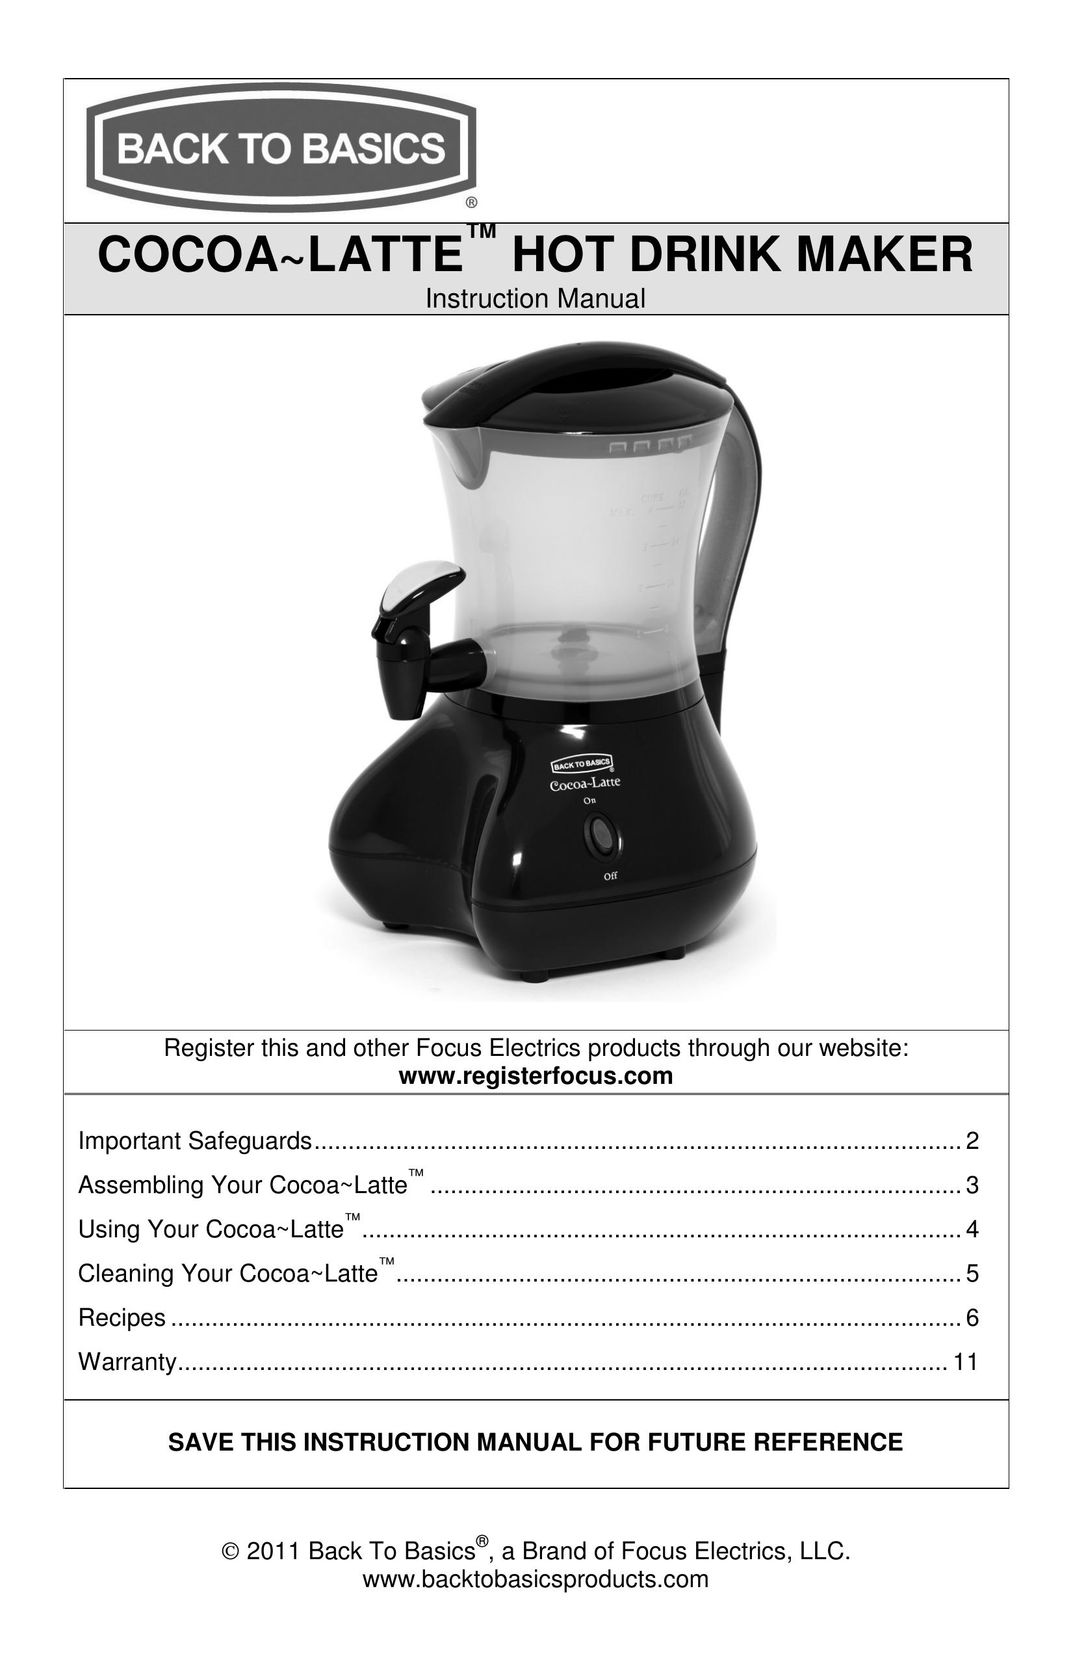 West Bend Back to Basics Cocoa~Latte Hot Beverage Maker User Manual